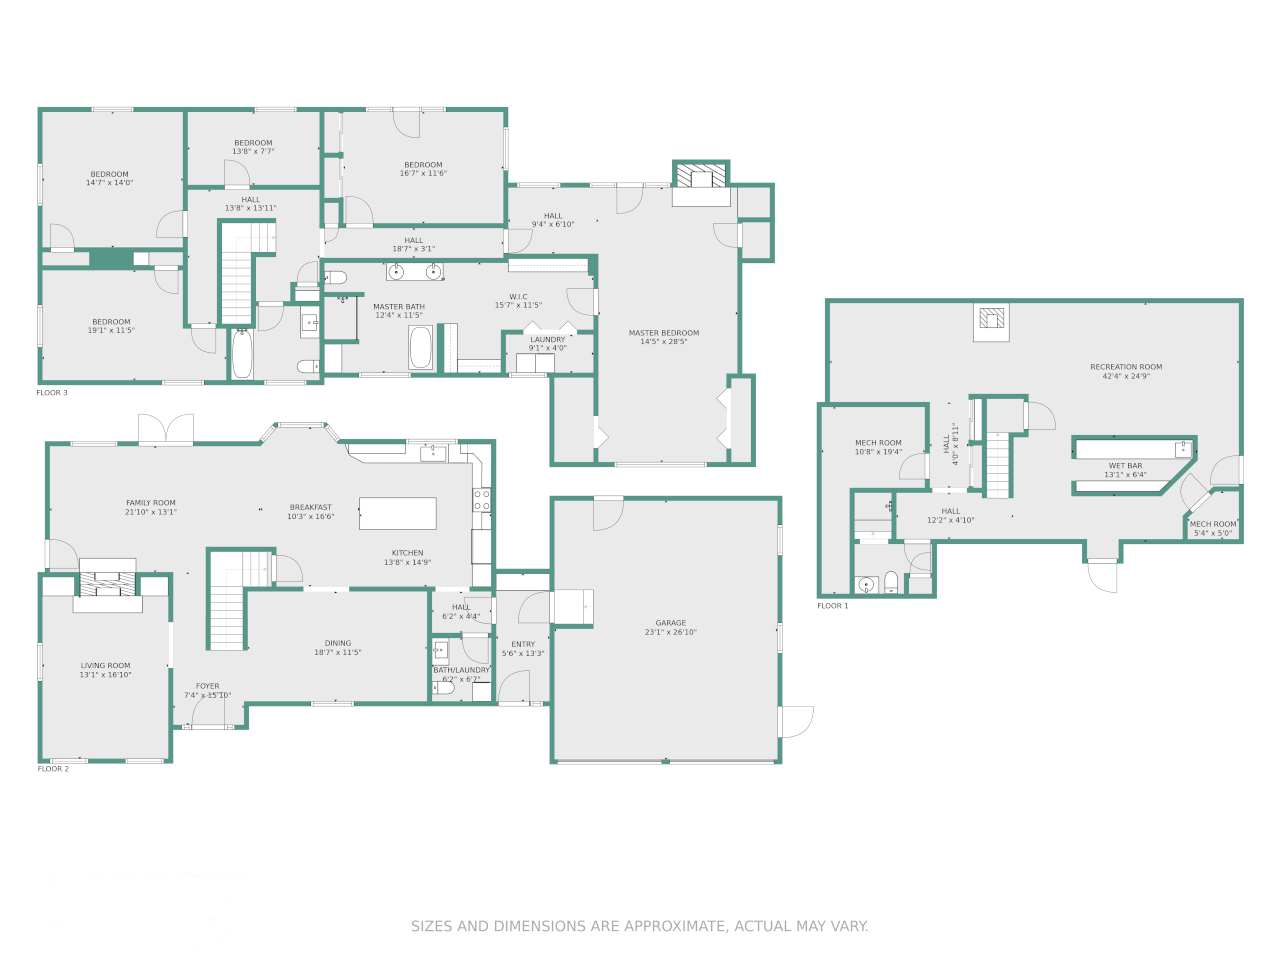 a multi floor floorplan